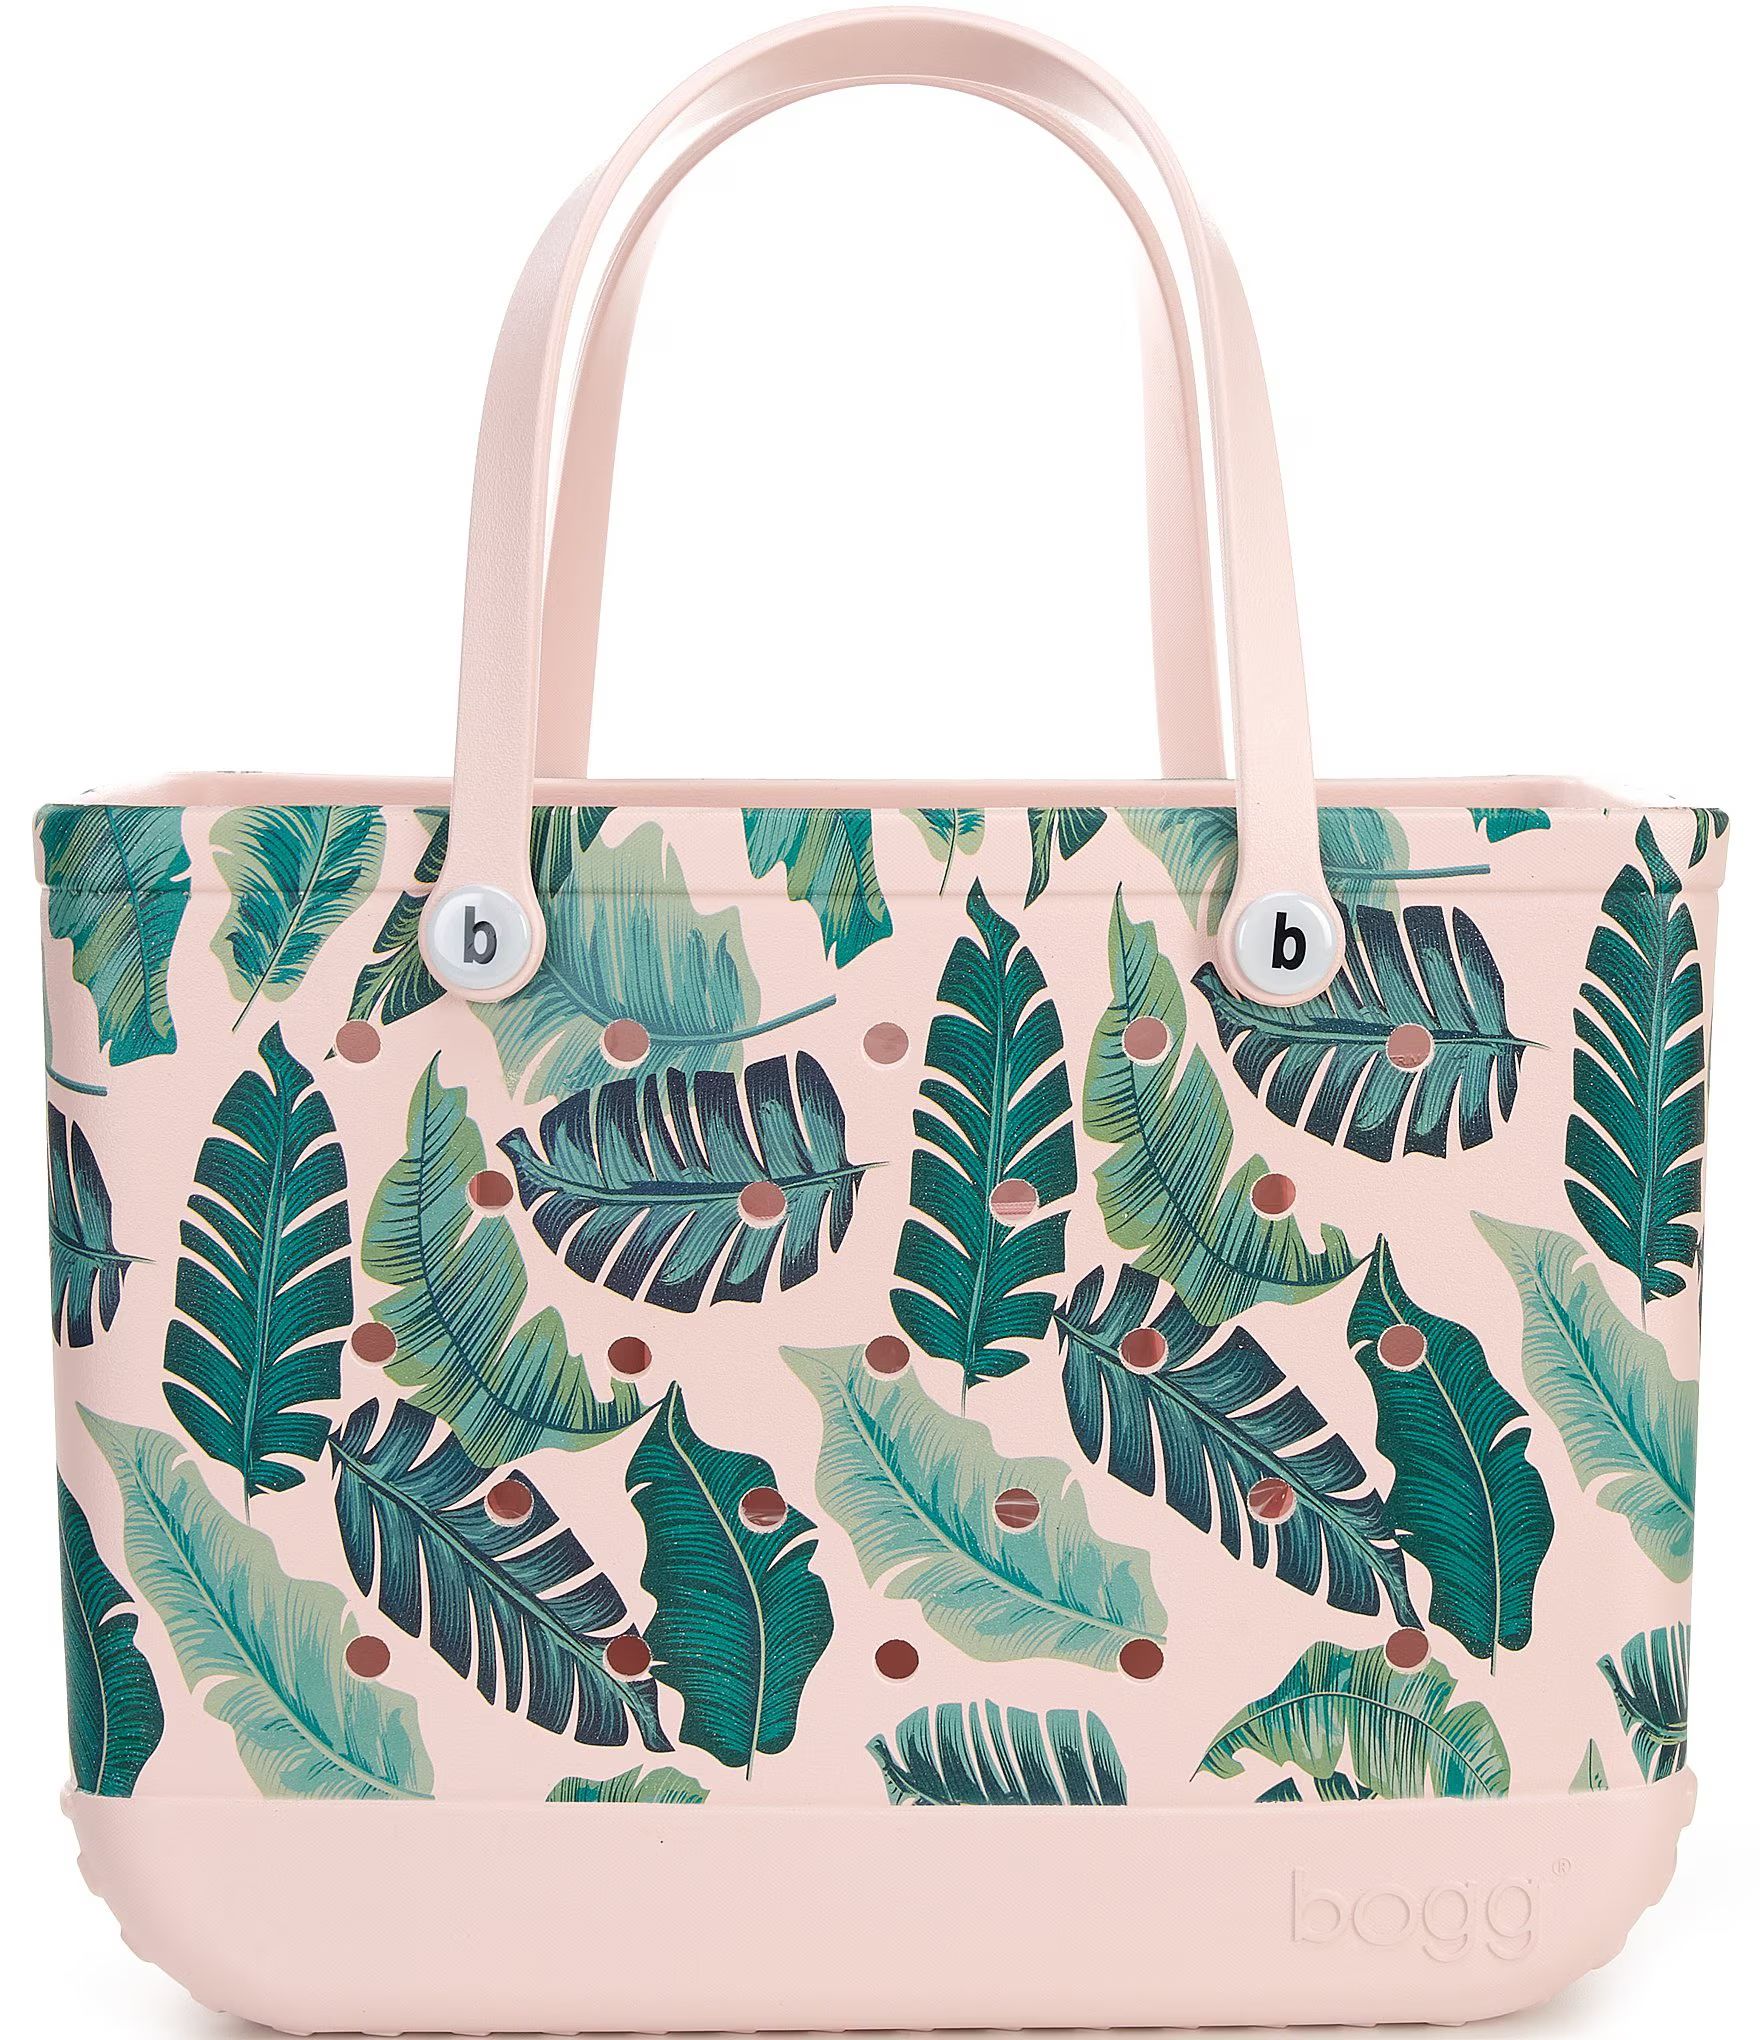 Original Bogg Palm Print Tote Bag | Dillard's